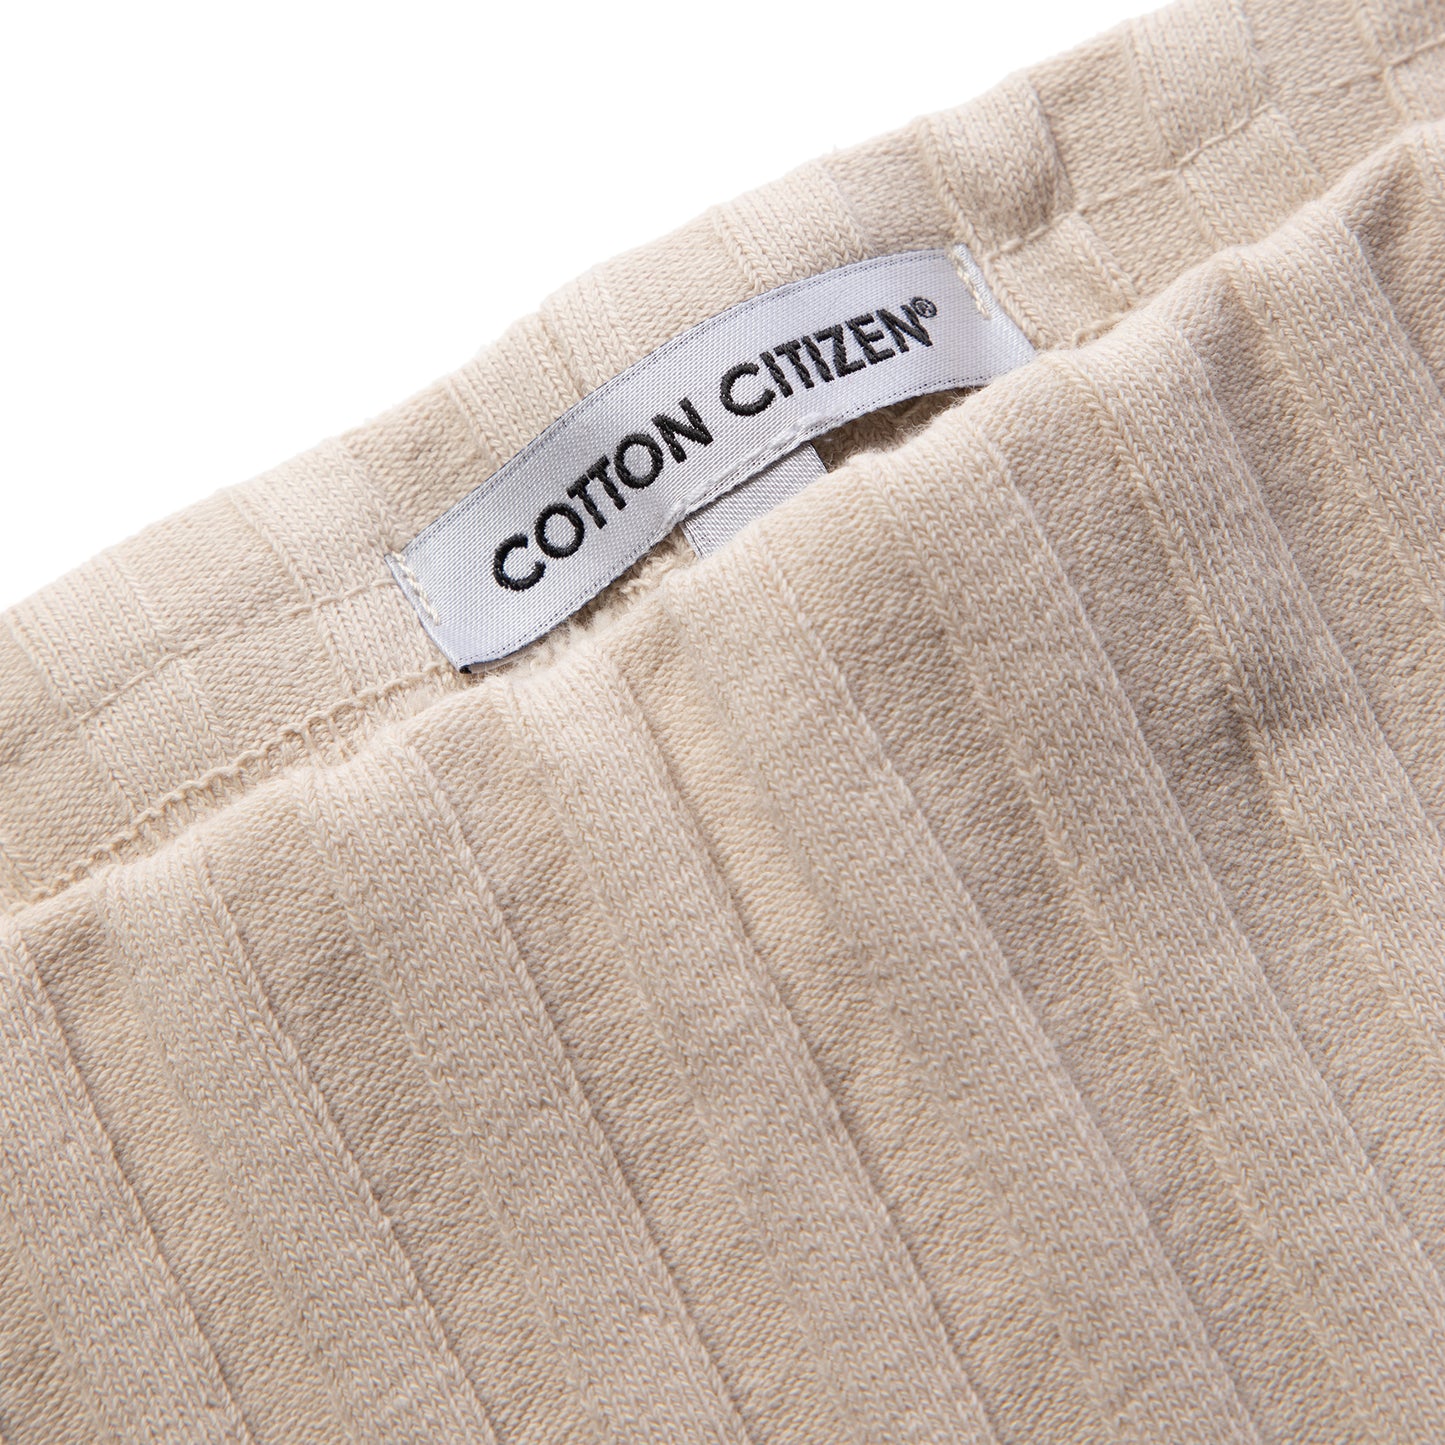 Cotton Citizen Capri Mini Skirt (Oatmeal)